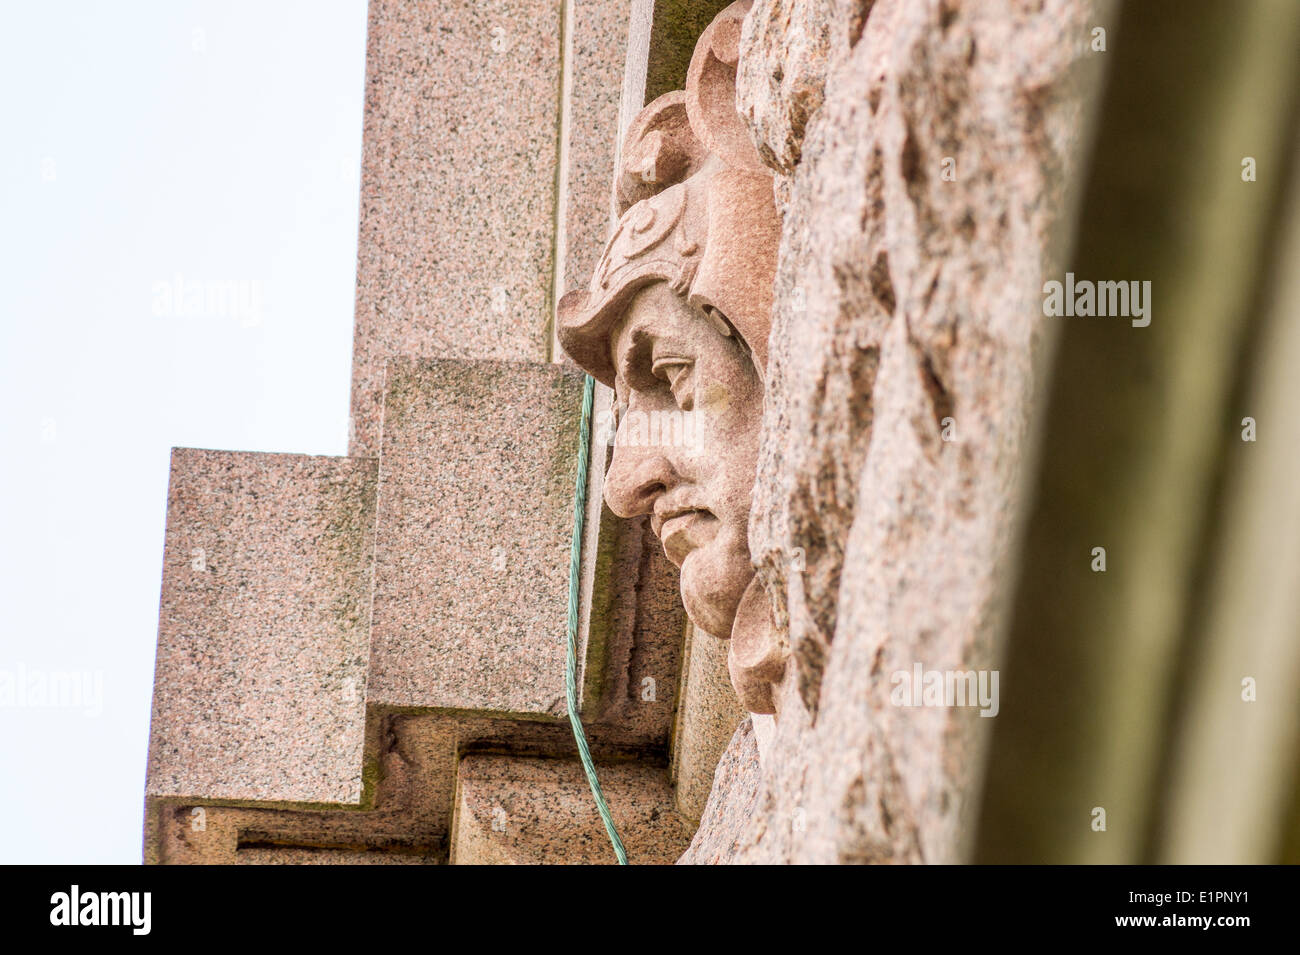 Statue de tête humaine qui sort d'un mur Banque D'Images